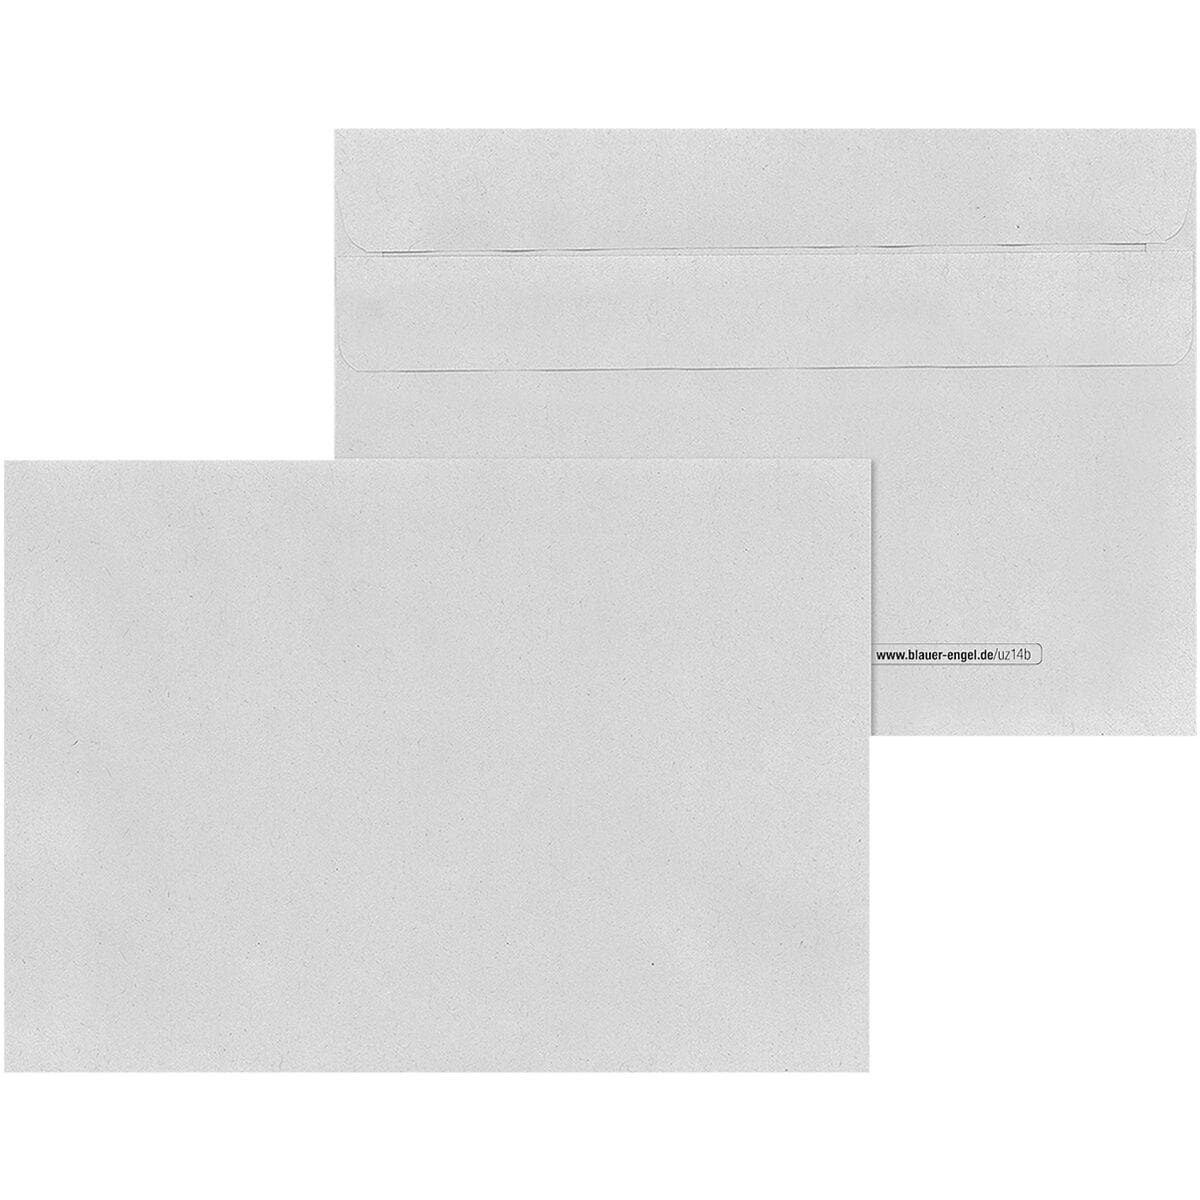 enveloppes Mailmedia, C6 75 g/m sans fentre, fermeture autocollante - 1000 pice(s)